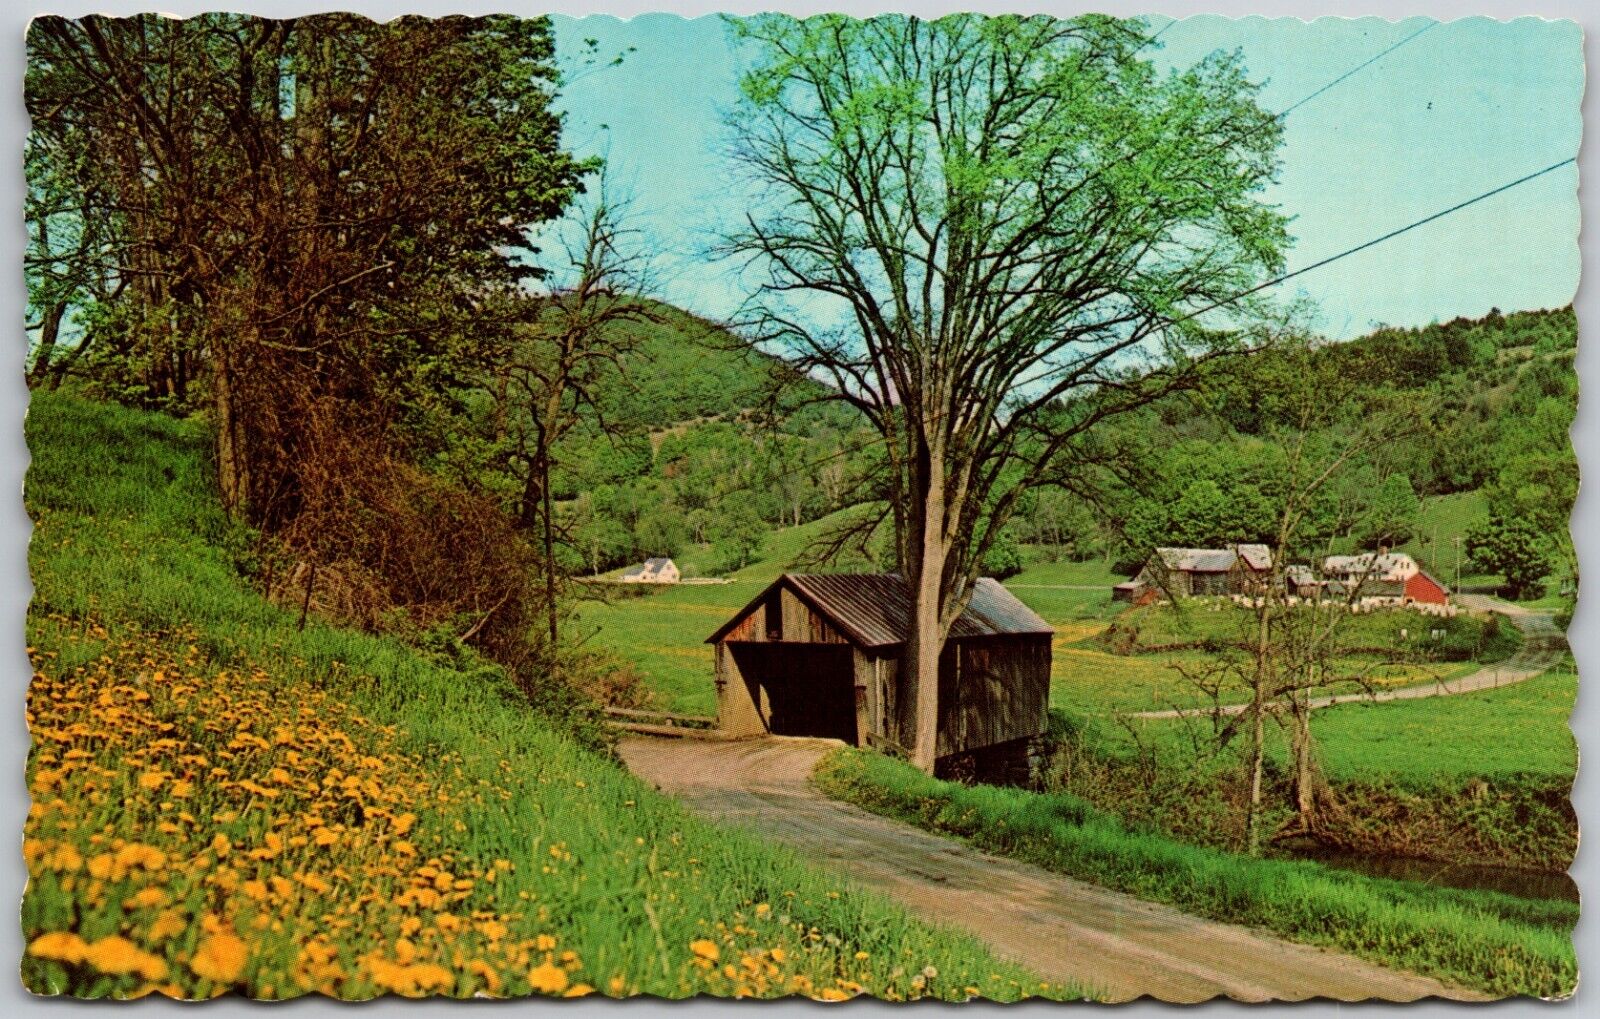 Cilley Covered Bridge  - Tunbridge Vermont Over White River - 1969 Postcard 9091